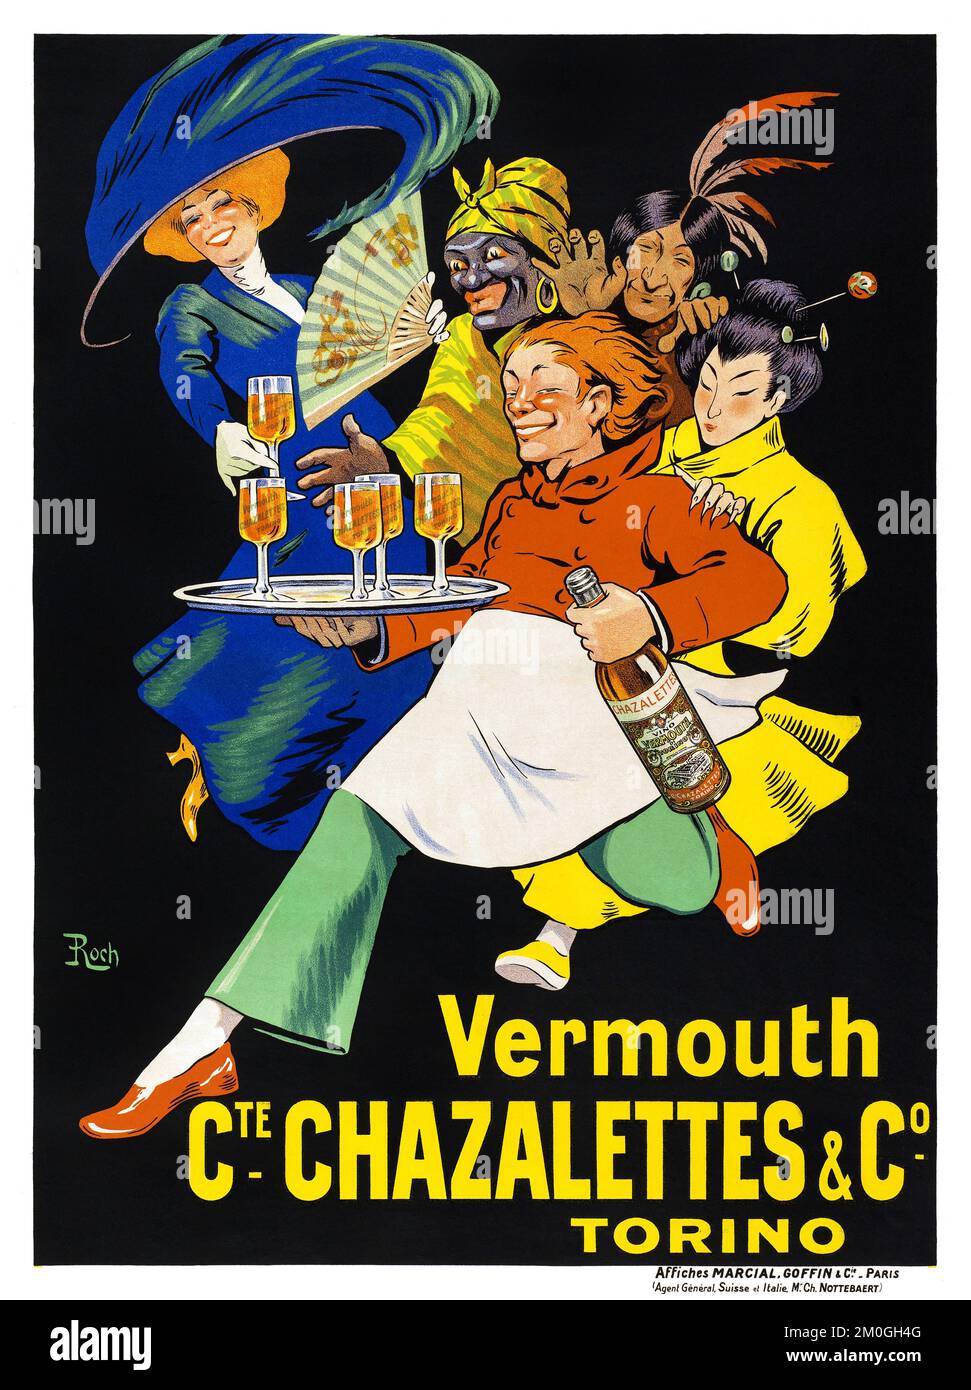 Vermouth CTE. Chazalettes & Co, Torino by Roch (date sconosciute). Poster pubblicato Foto Stock